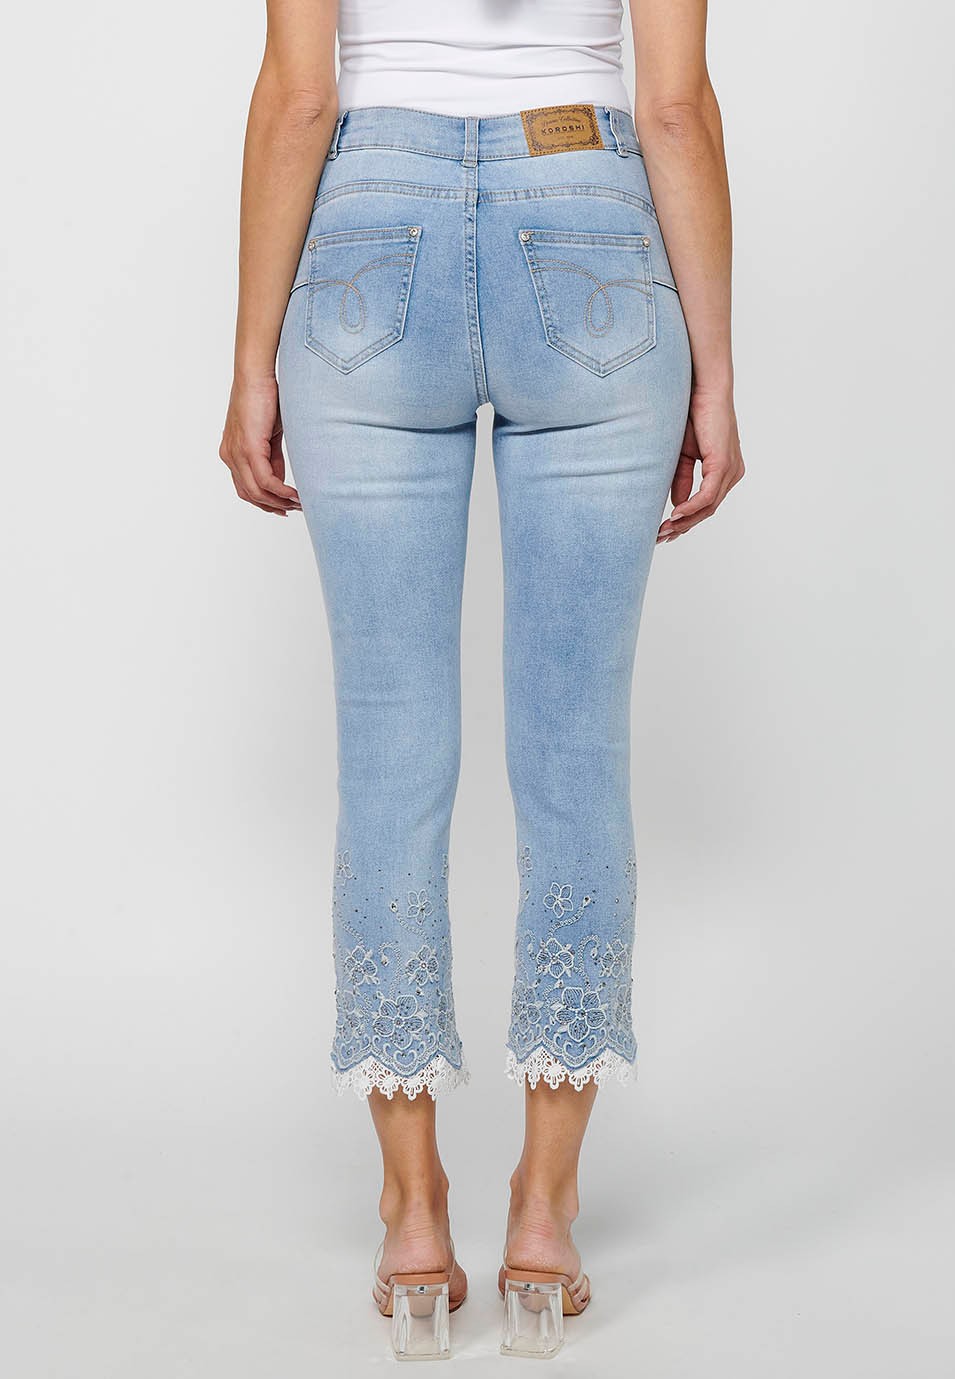 Pantalón largo jeans slim con Cierre delantero con cremallera y Detalles bordados florales de Color Azul claro para Mujer 2